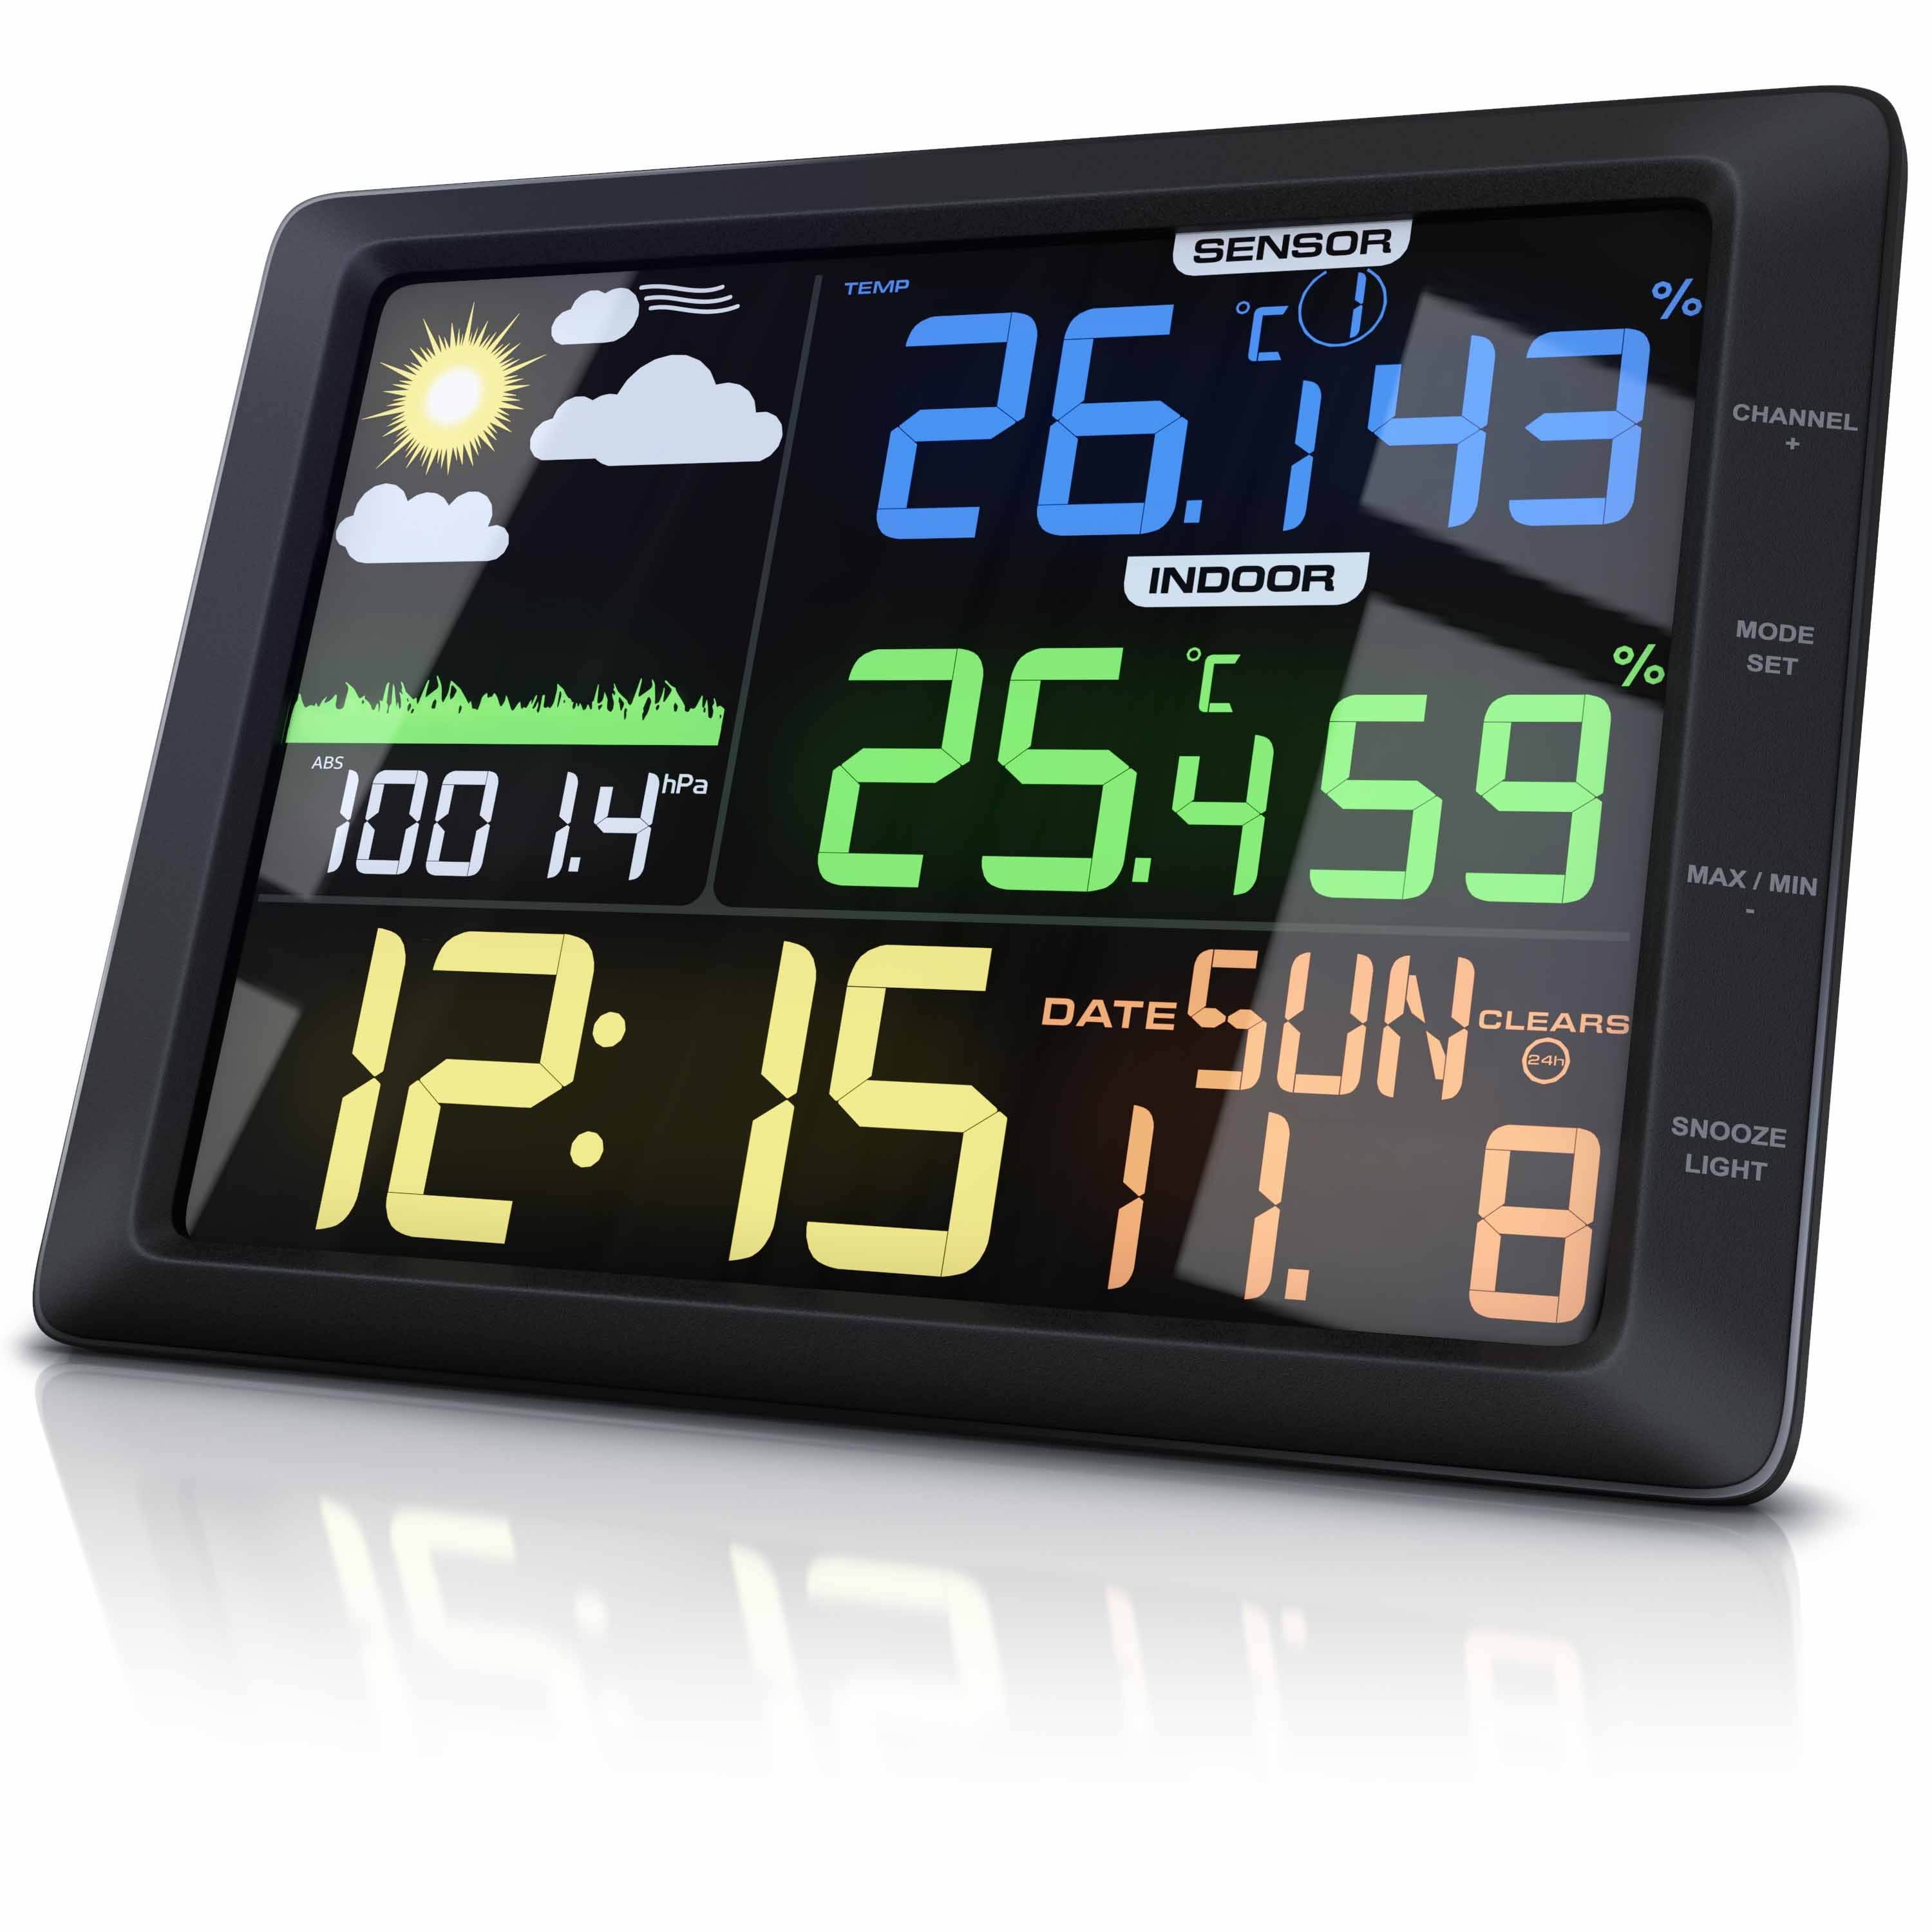 BEARWARE Farbdisplay, LCD Wetterstation uvm) Außensensor, Luftdruck, (mit Wettervorhersage, Temperatur